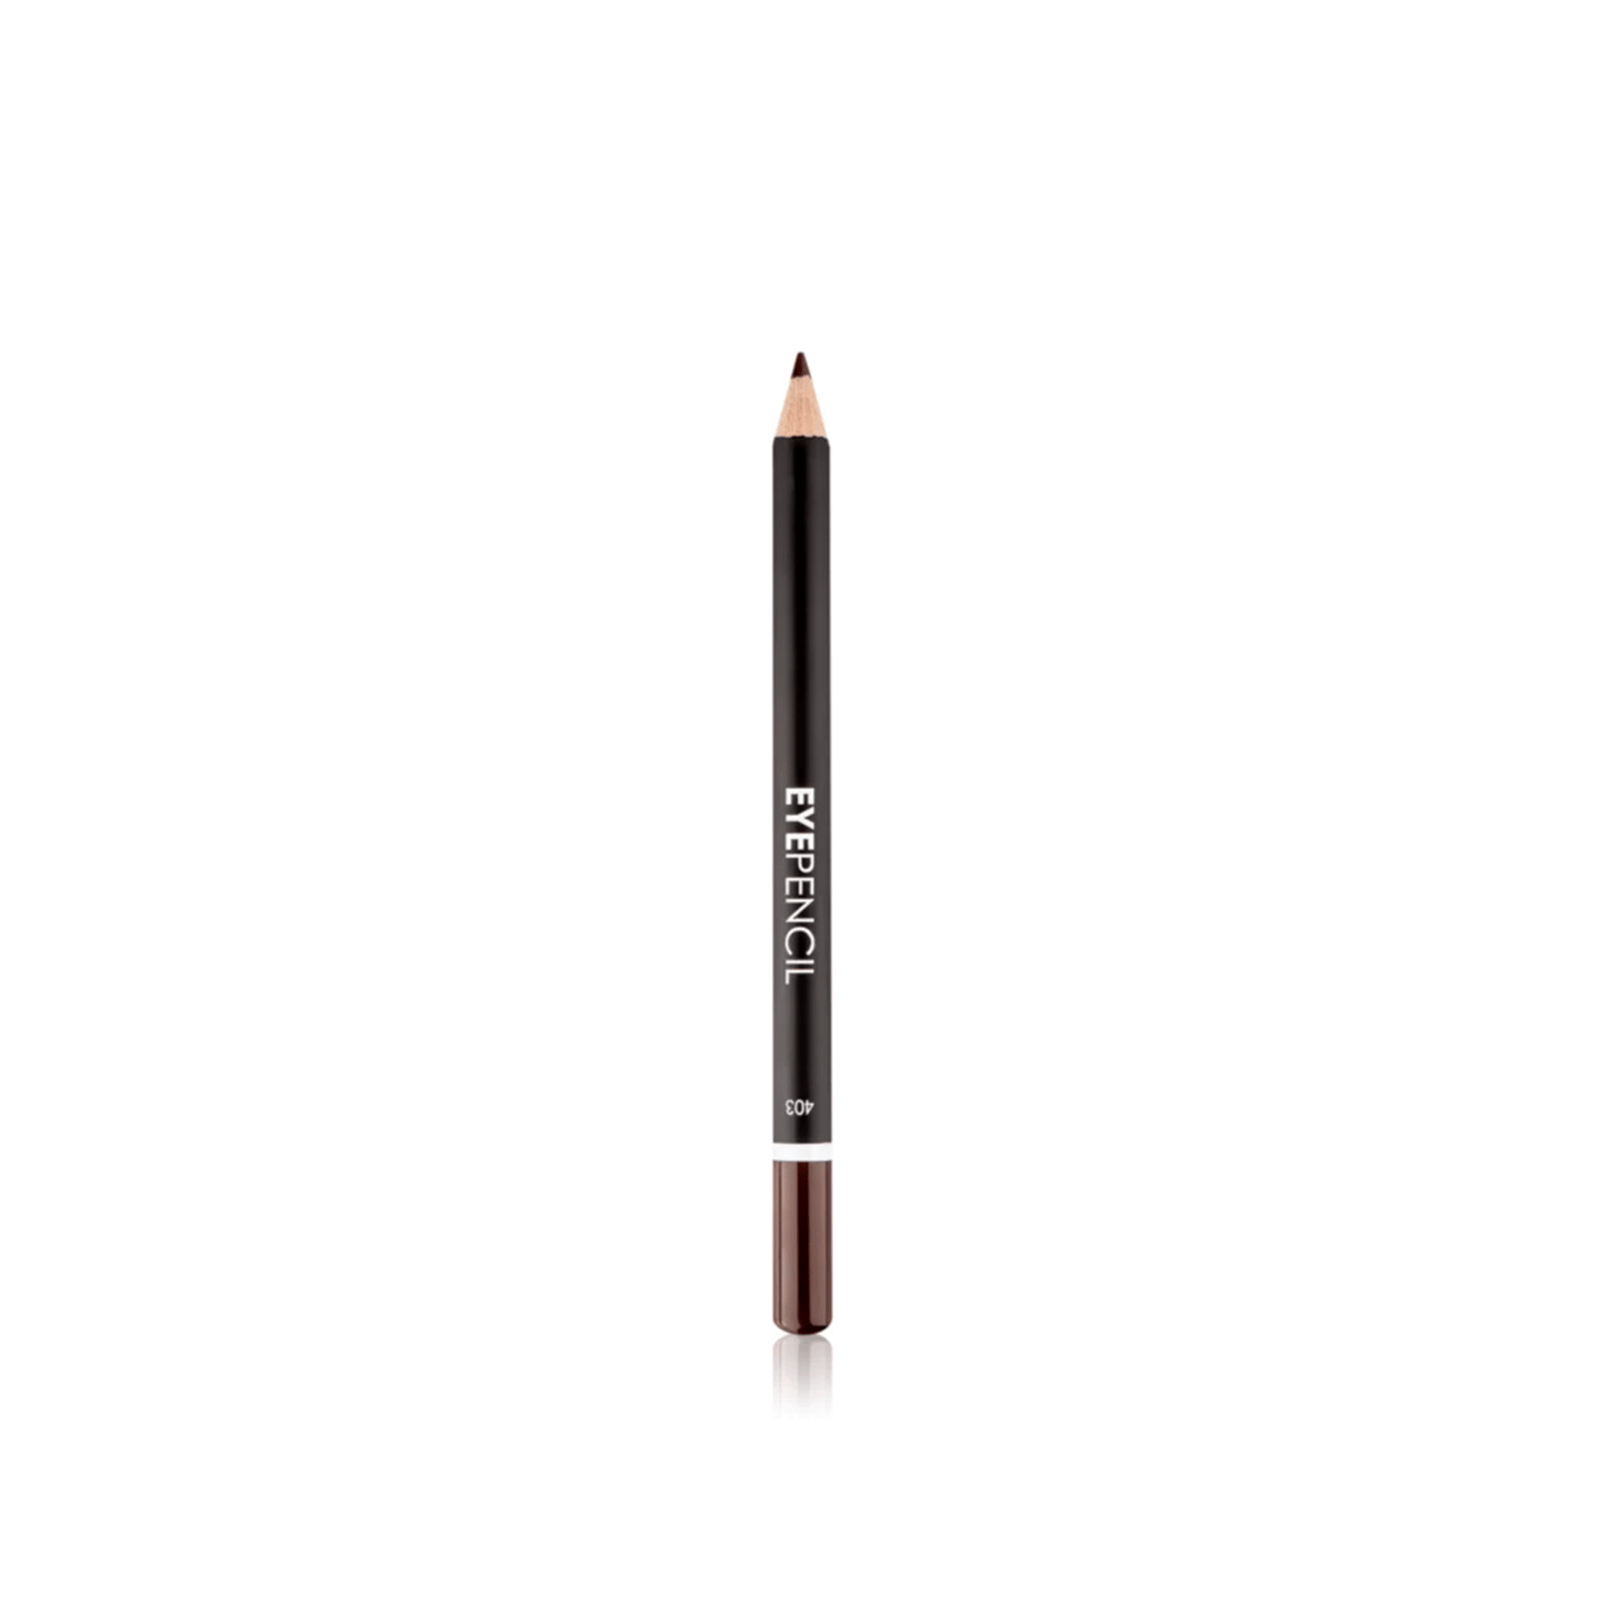 Lamel Eye Pencil 403 1.7g (0.05oz)